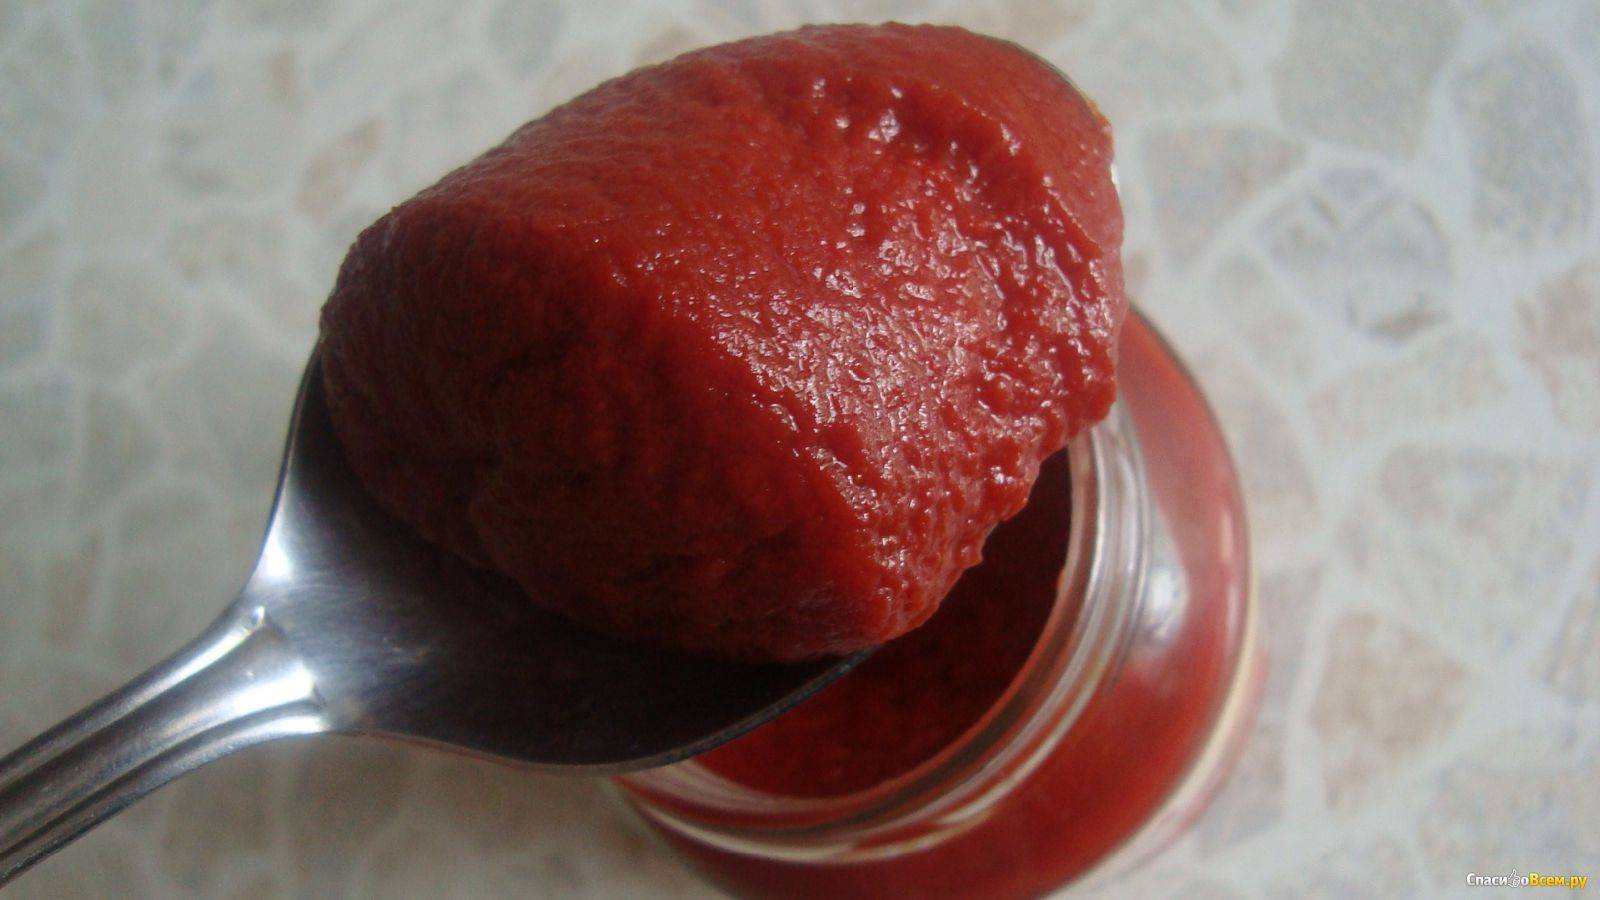 Польза томатной пасты